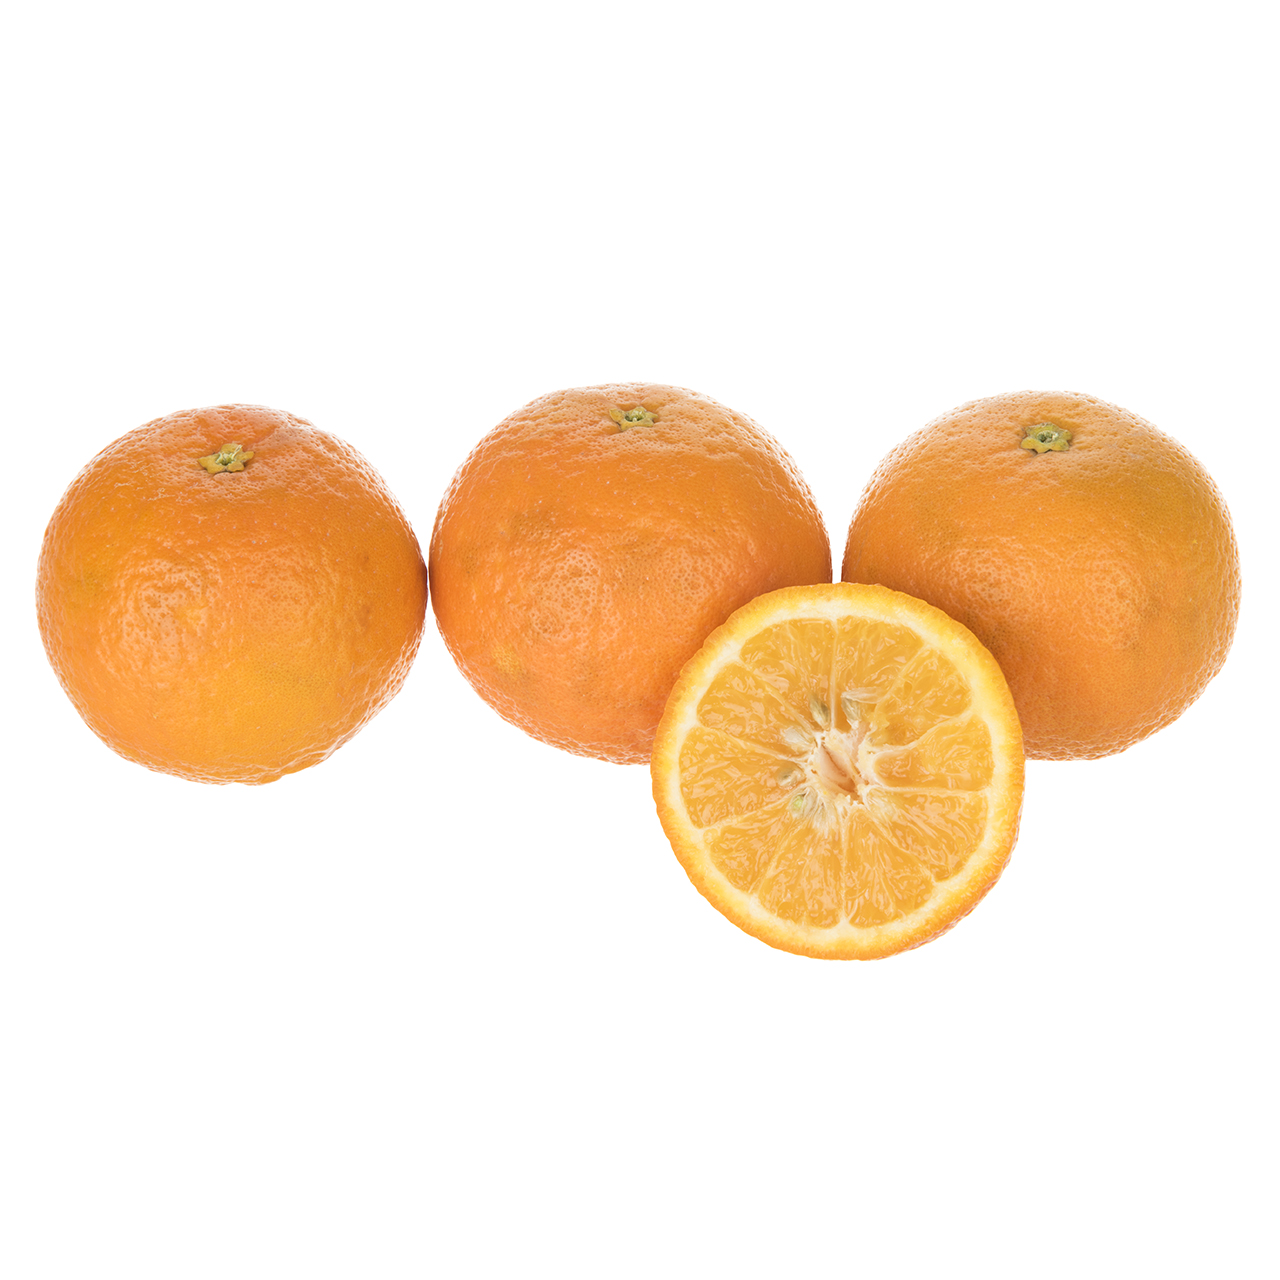 نارنگی کارا - 1 کیلوگرم (حداقل 10 عدد)